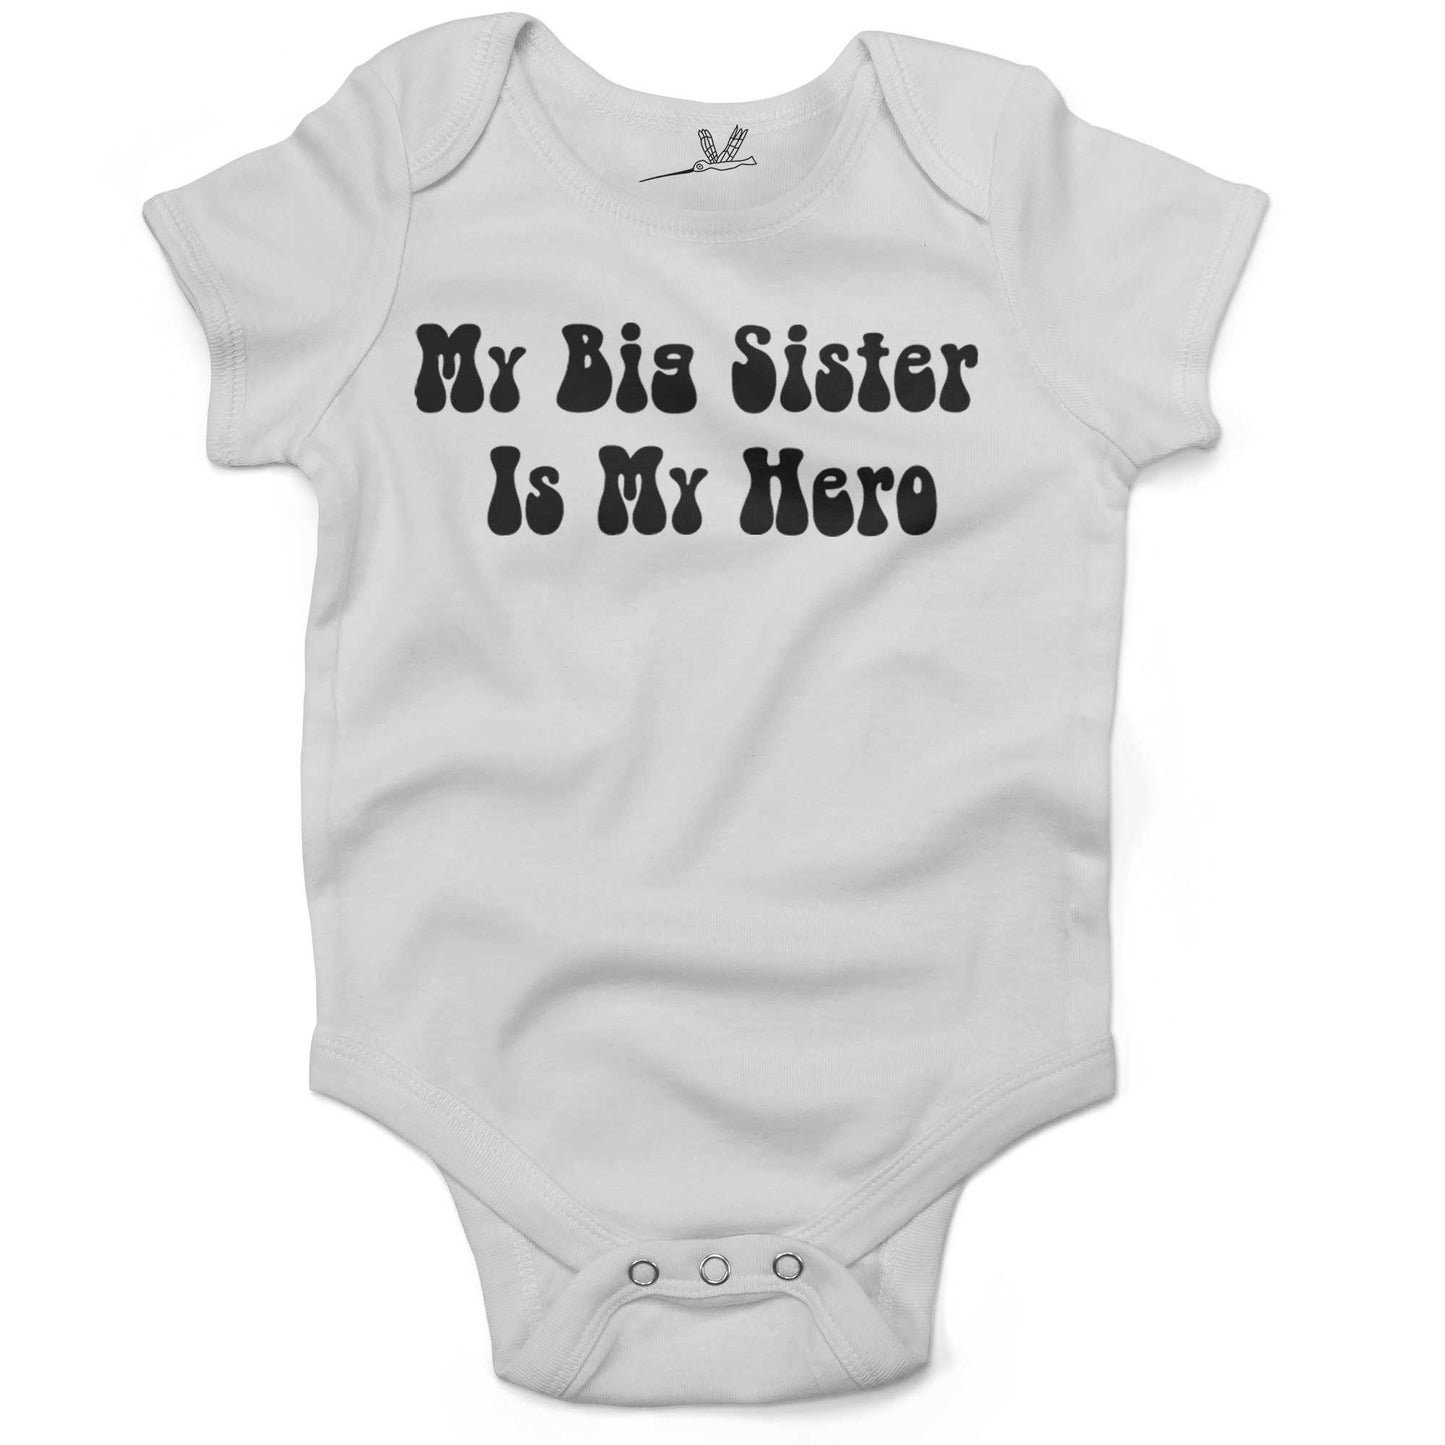 My Big Sister Is My Hero Infant Bodysuit or Raglan Tee-White-3-6 months